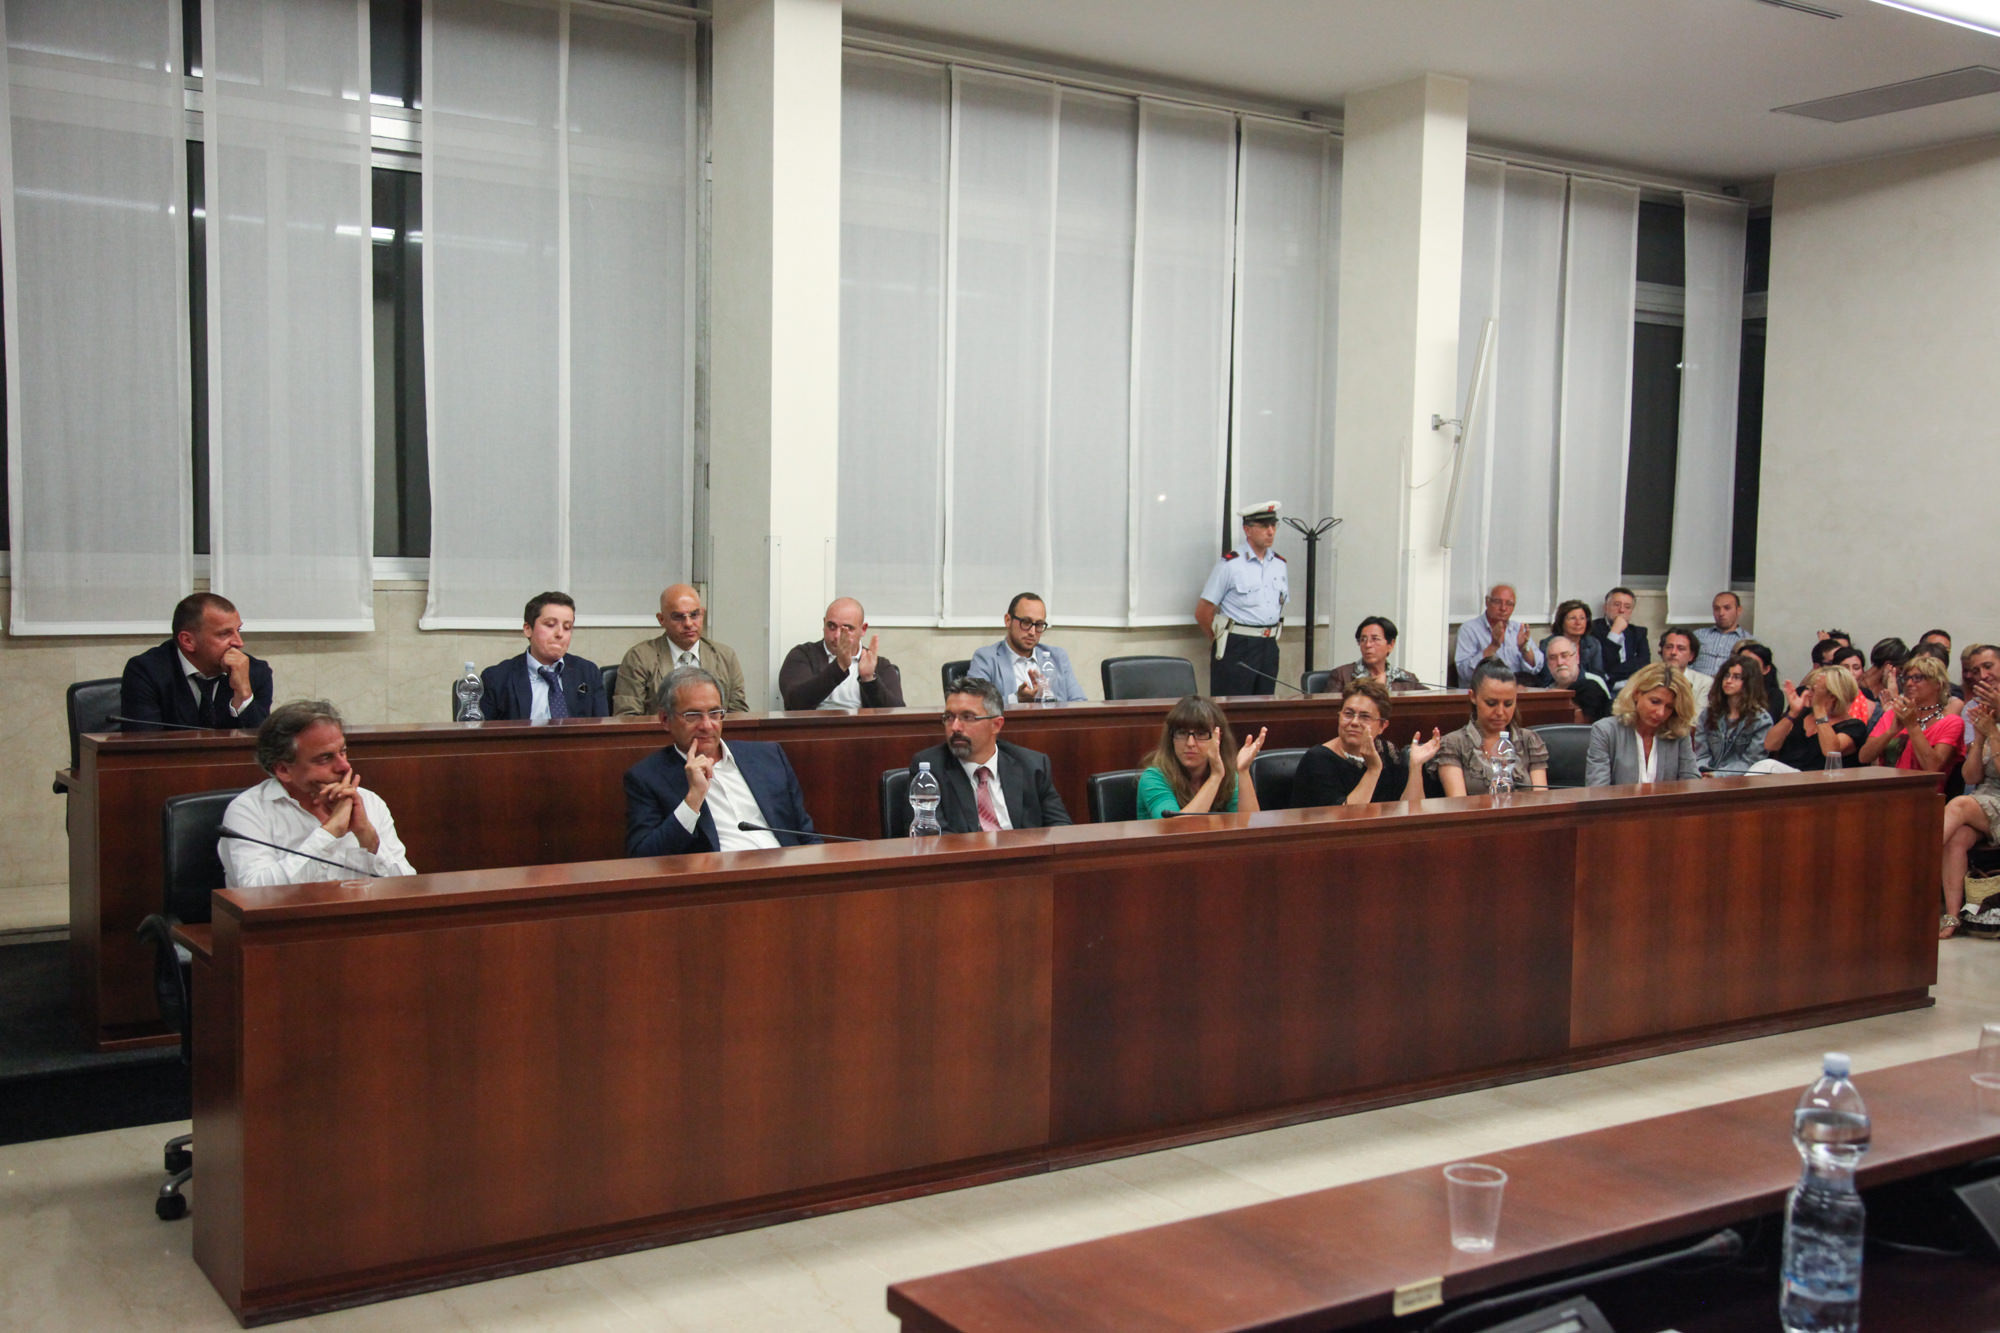 Assessori e consiglieri ridono durante il consiglio comunale aperto a Viareggio (video)